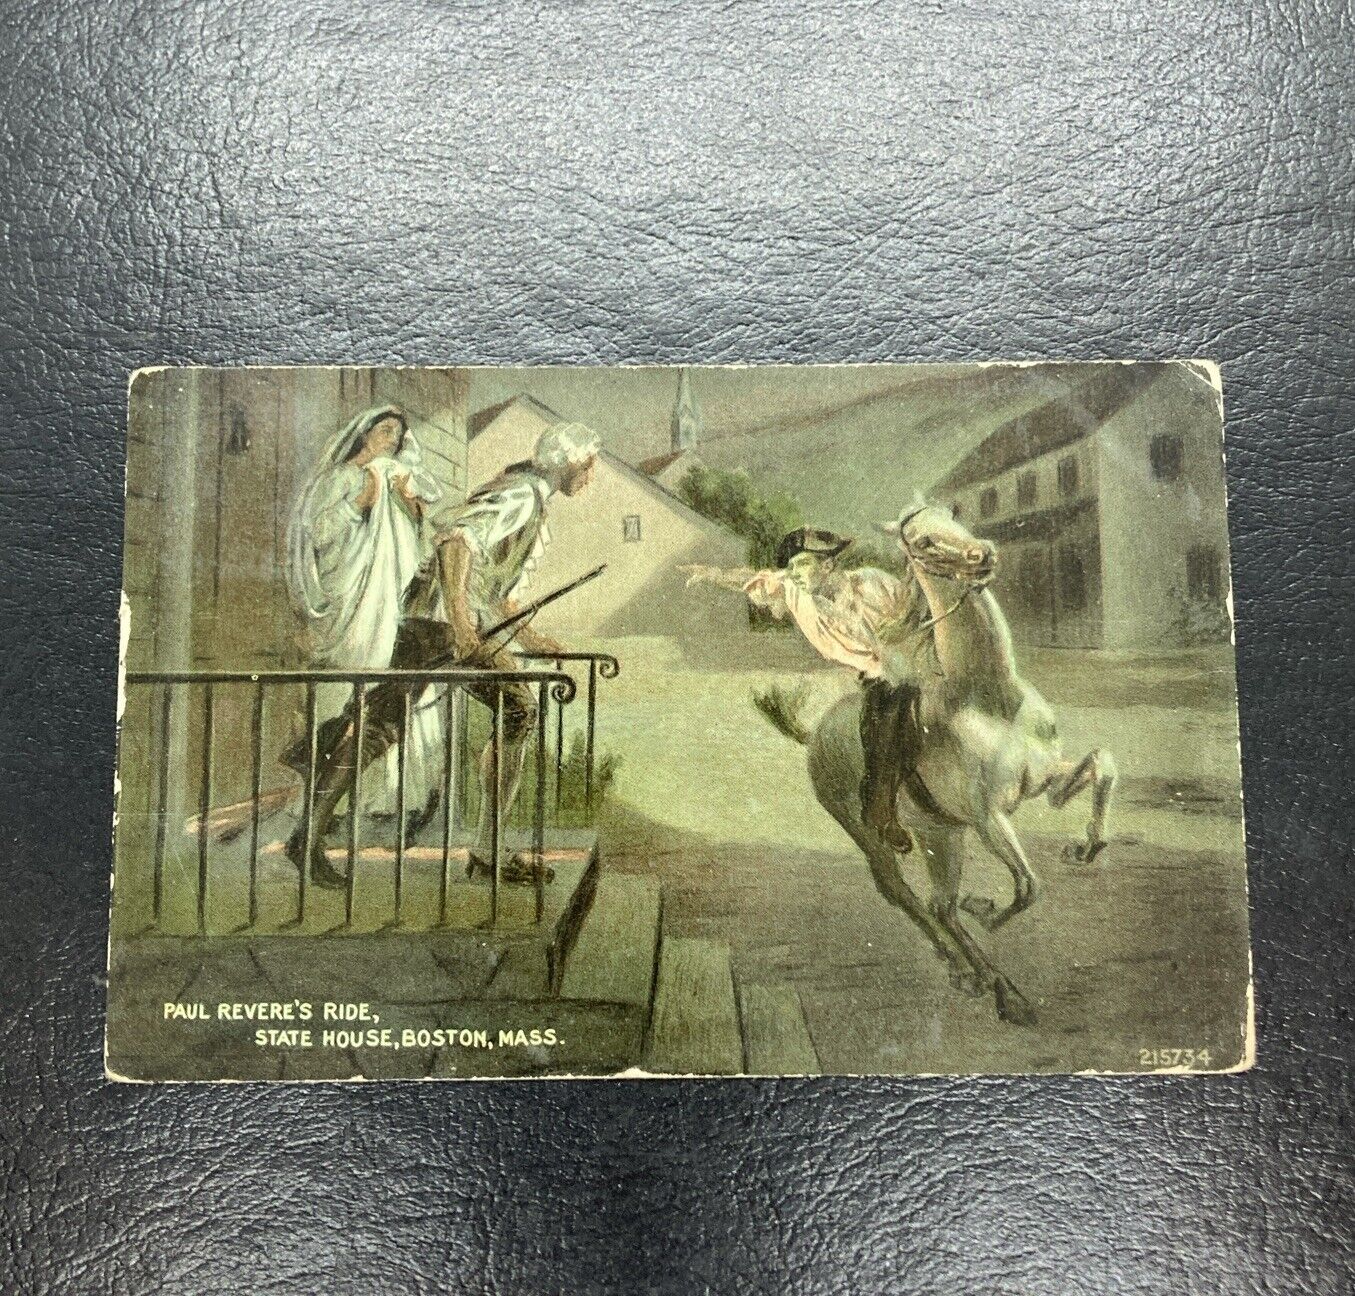 Paul Revere's Ride, State House, Boston, Massachusetts - Posted 1912 Postcard.